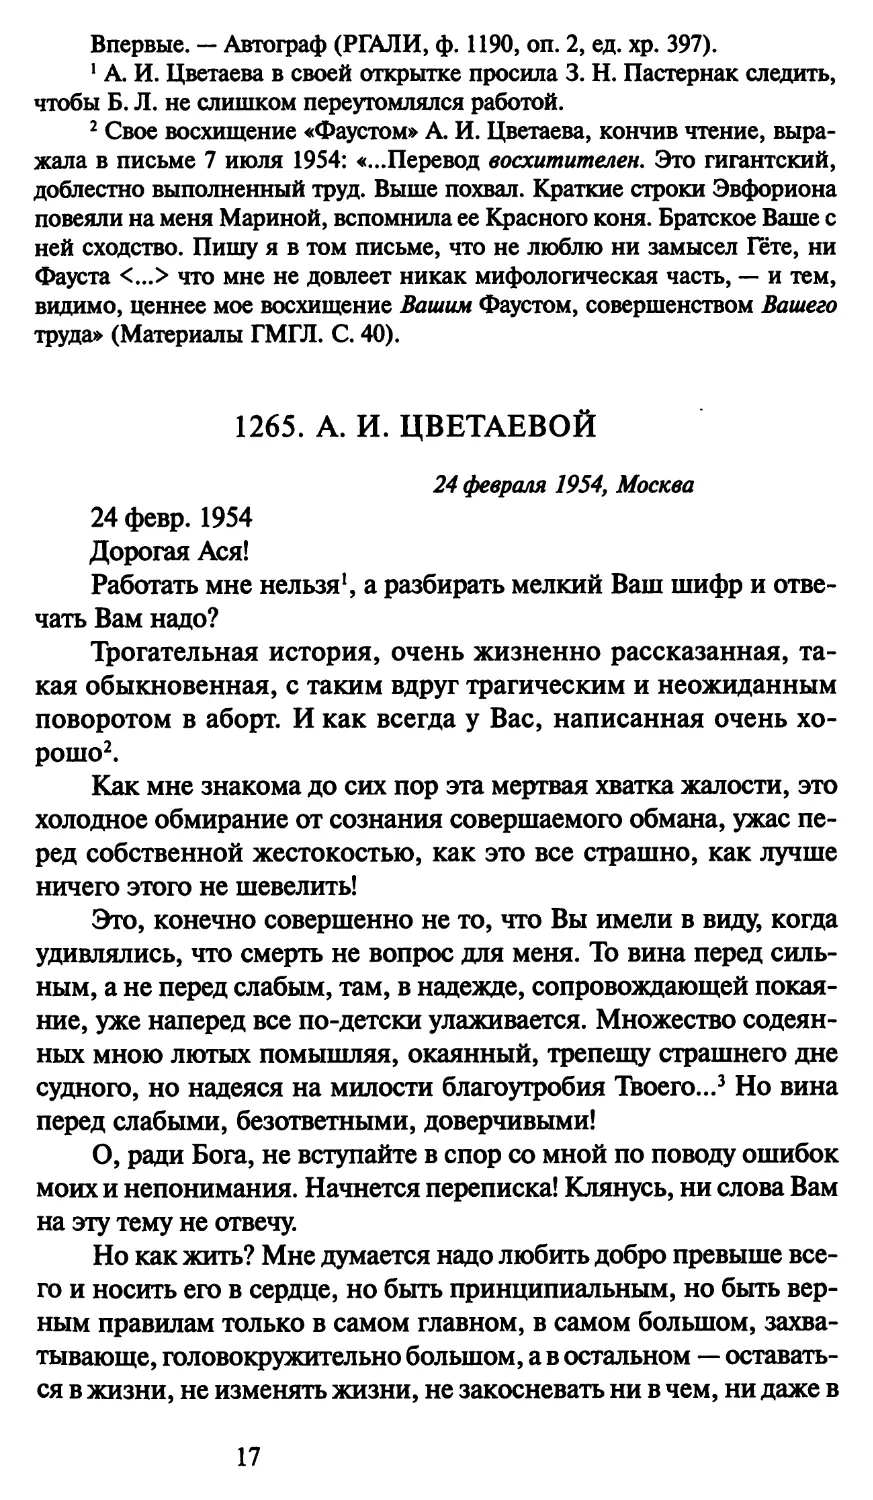 1265. А. И. Цветаевой 24 февраля 1954